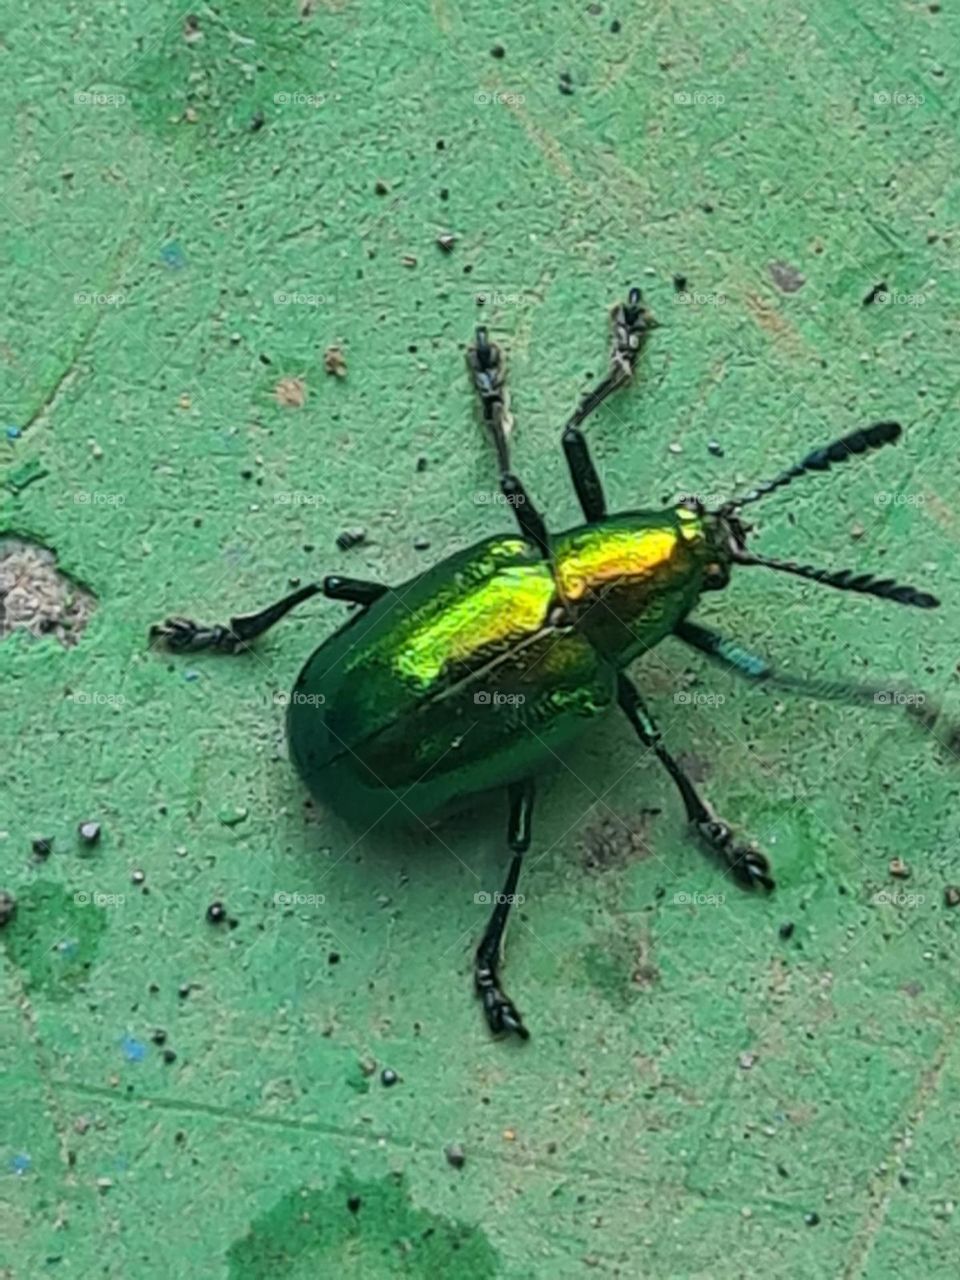 Bugs life - Green Beetle